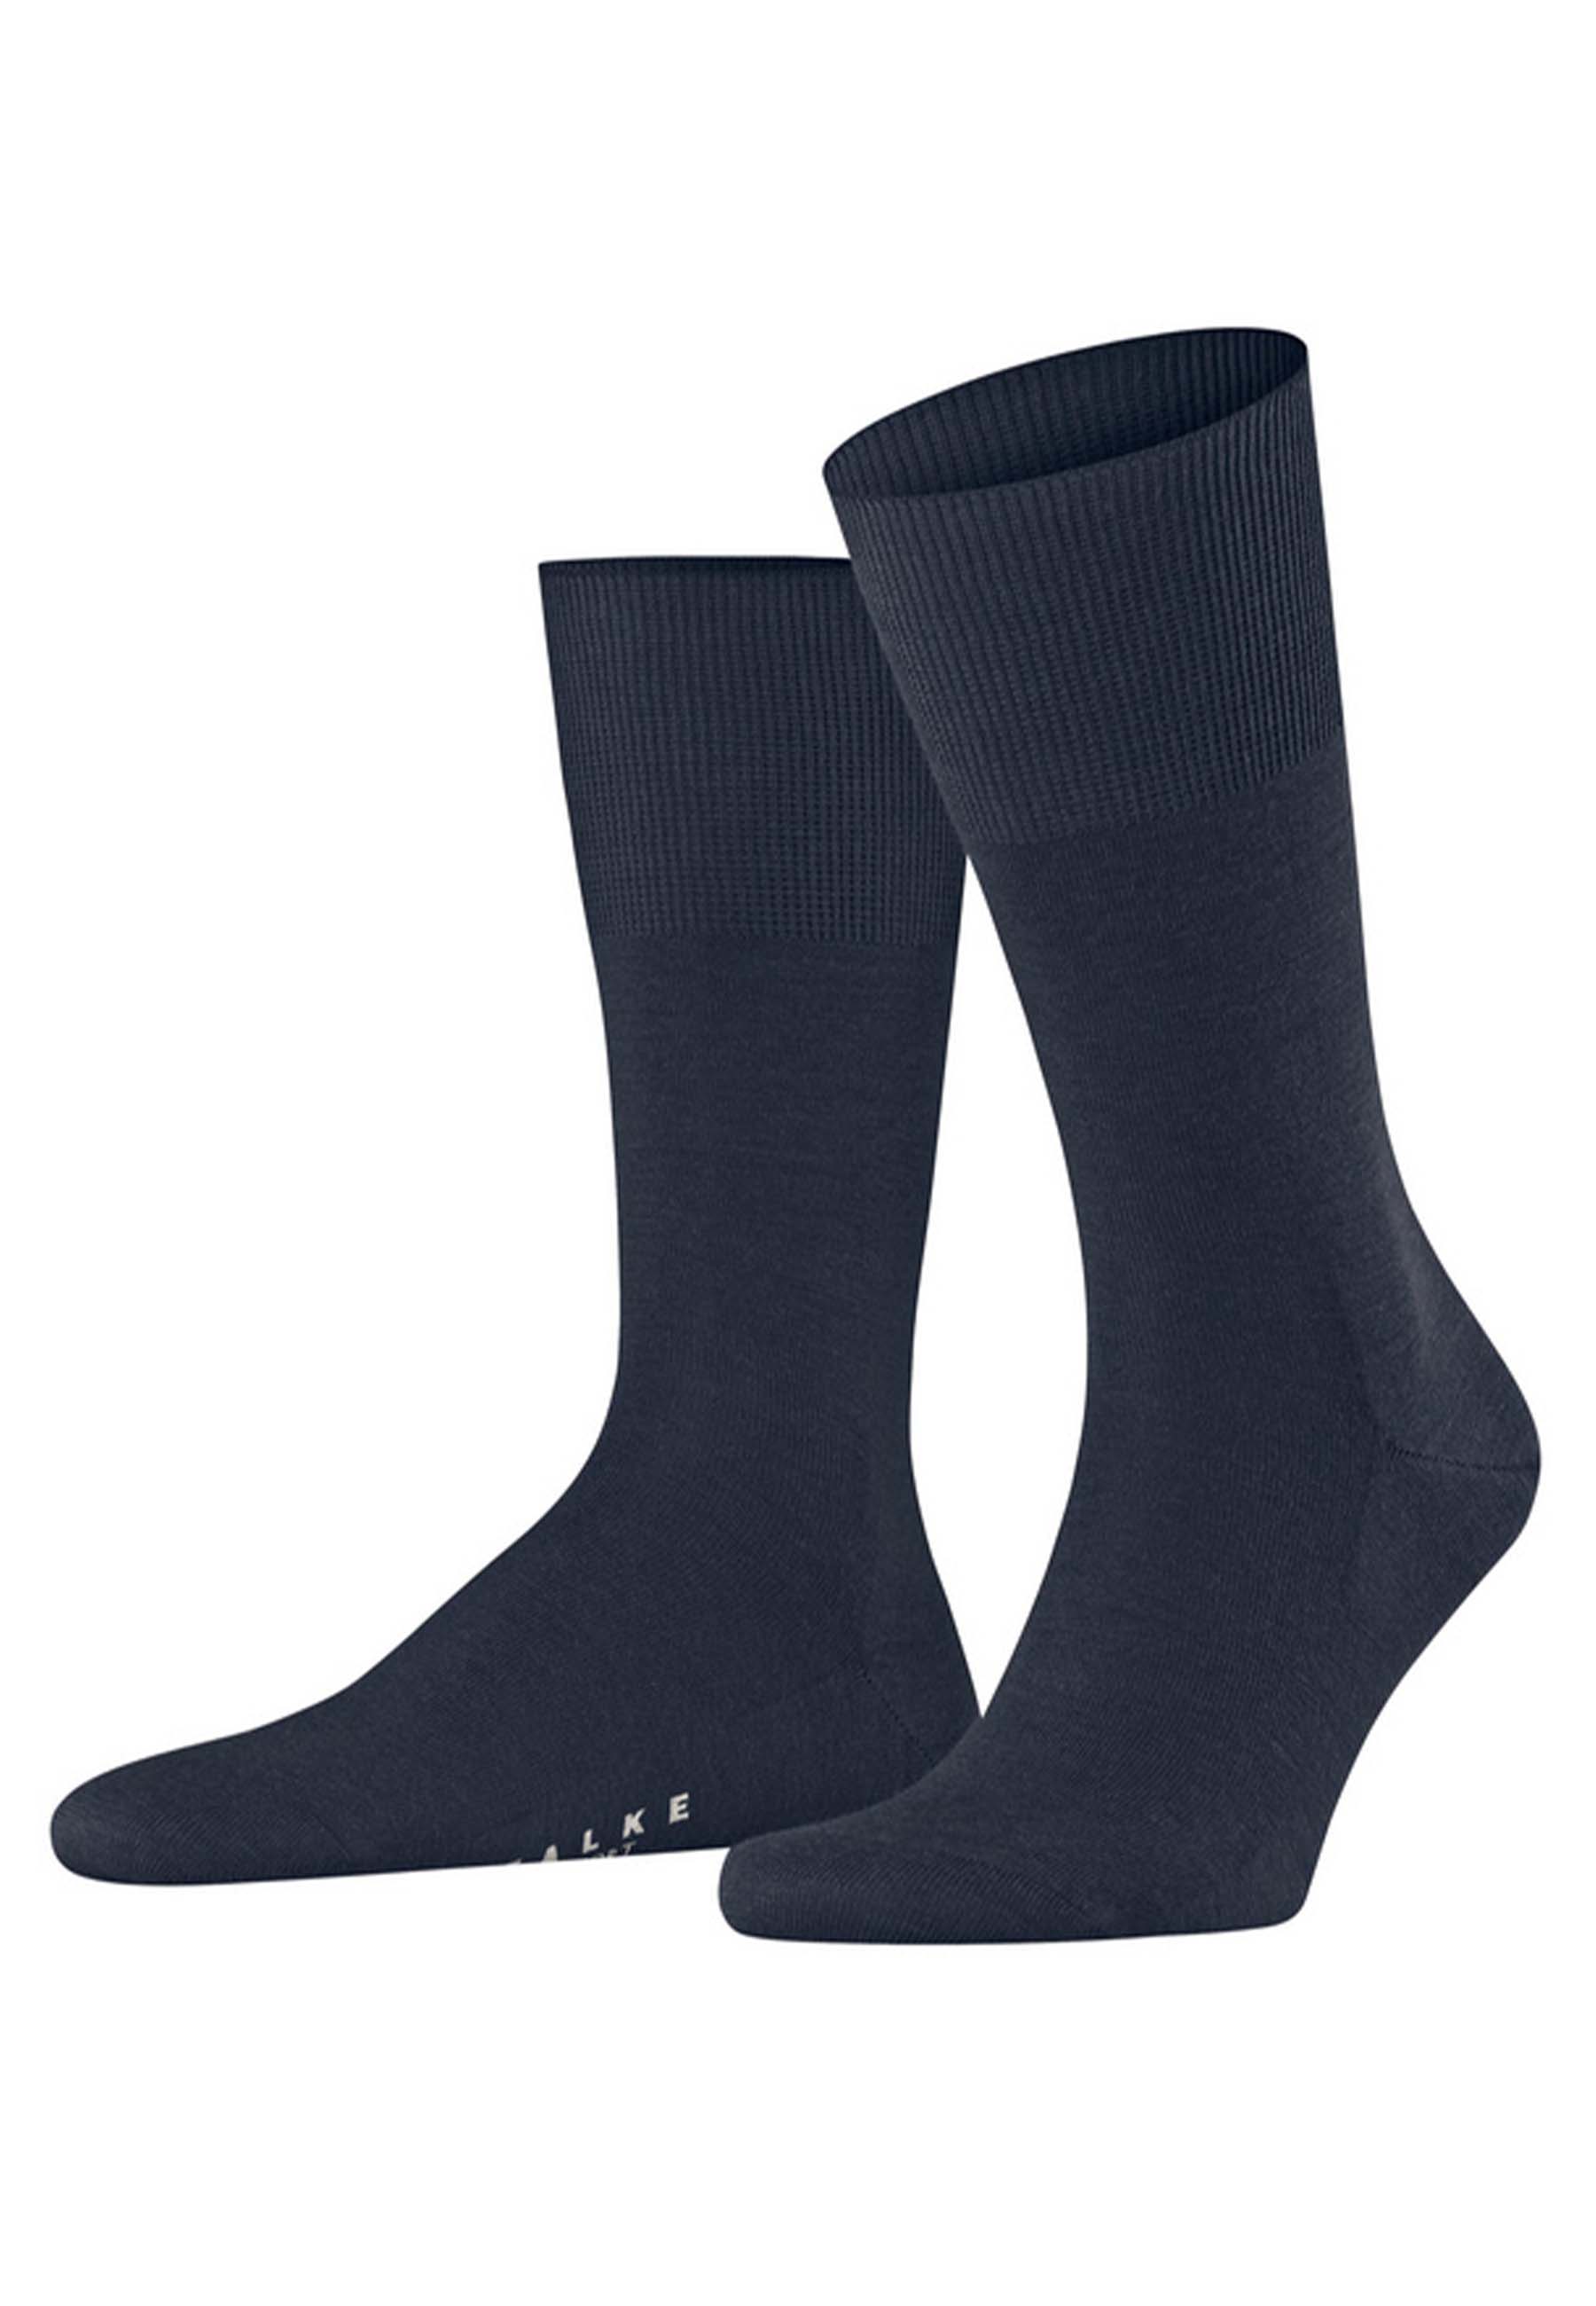 FALKE Sokken Blauw Wol maat 43-44 hoge sokken blauw